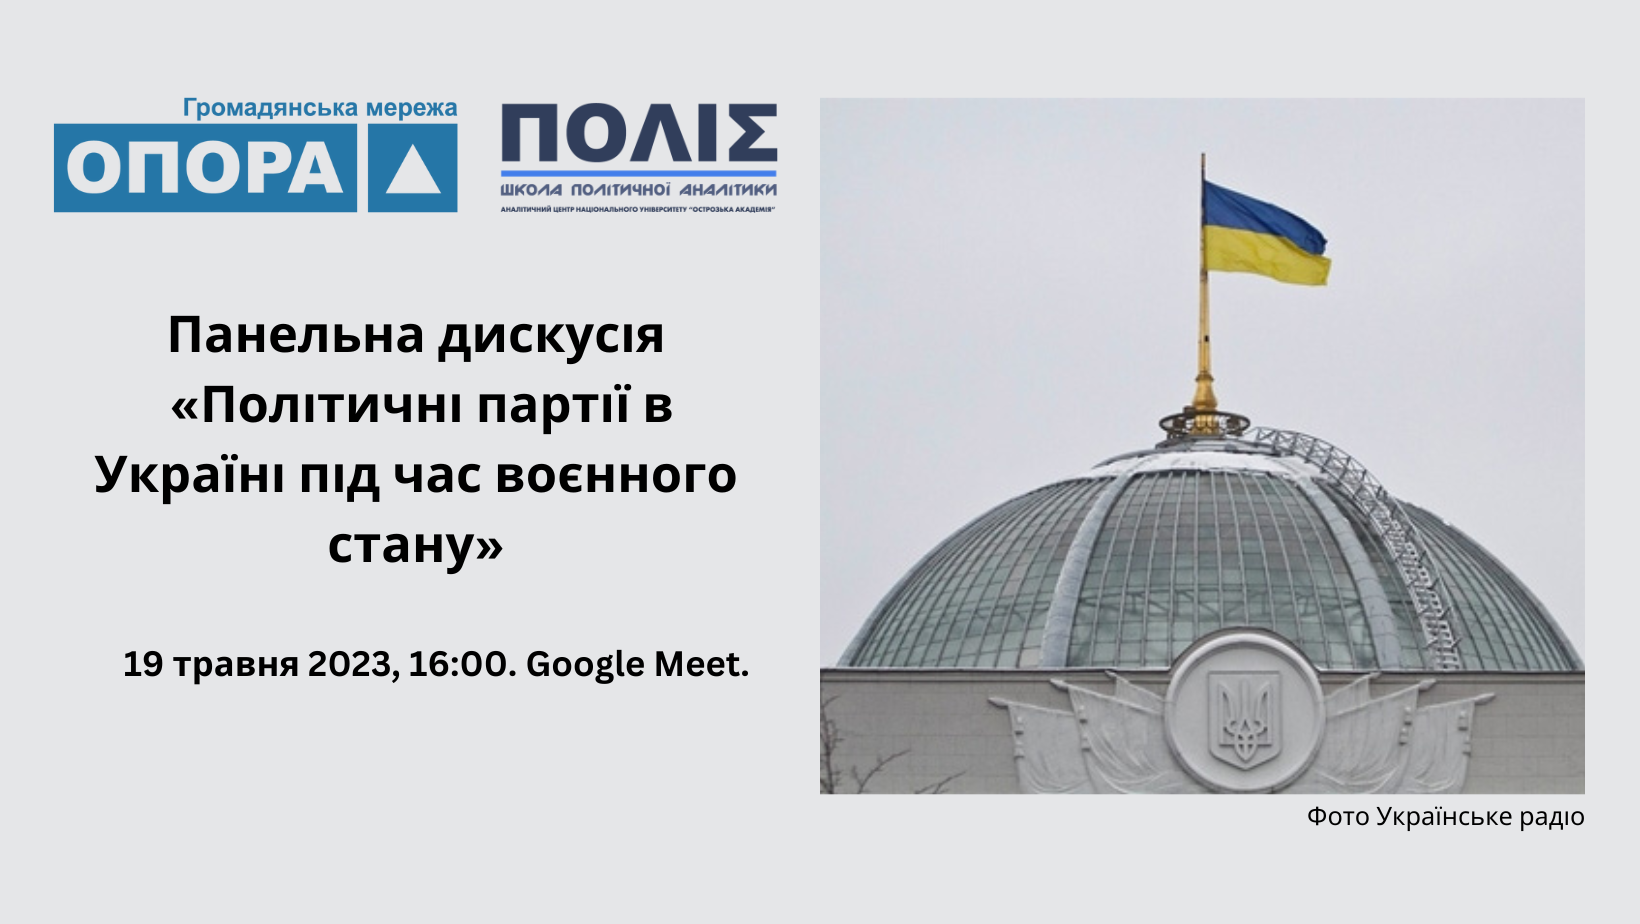 Панельна дискусія «Політичні партії в Україні під час воєнного стану»